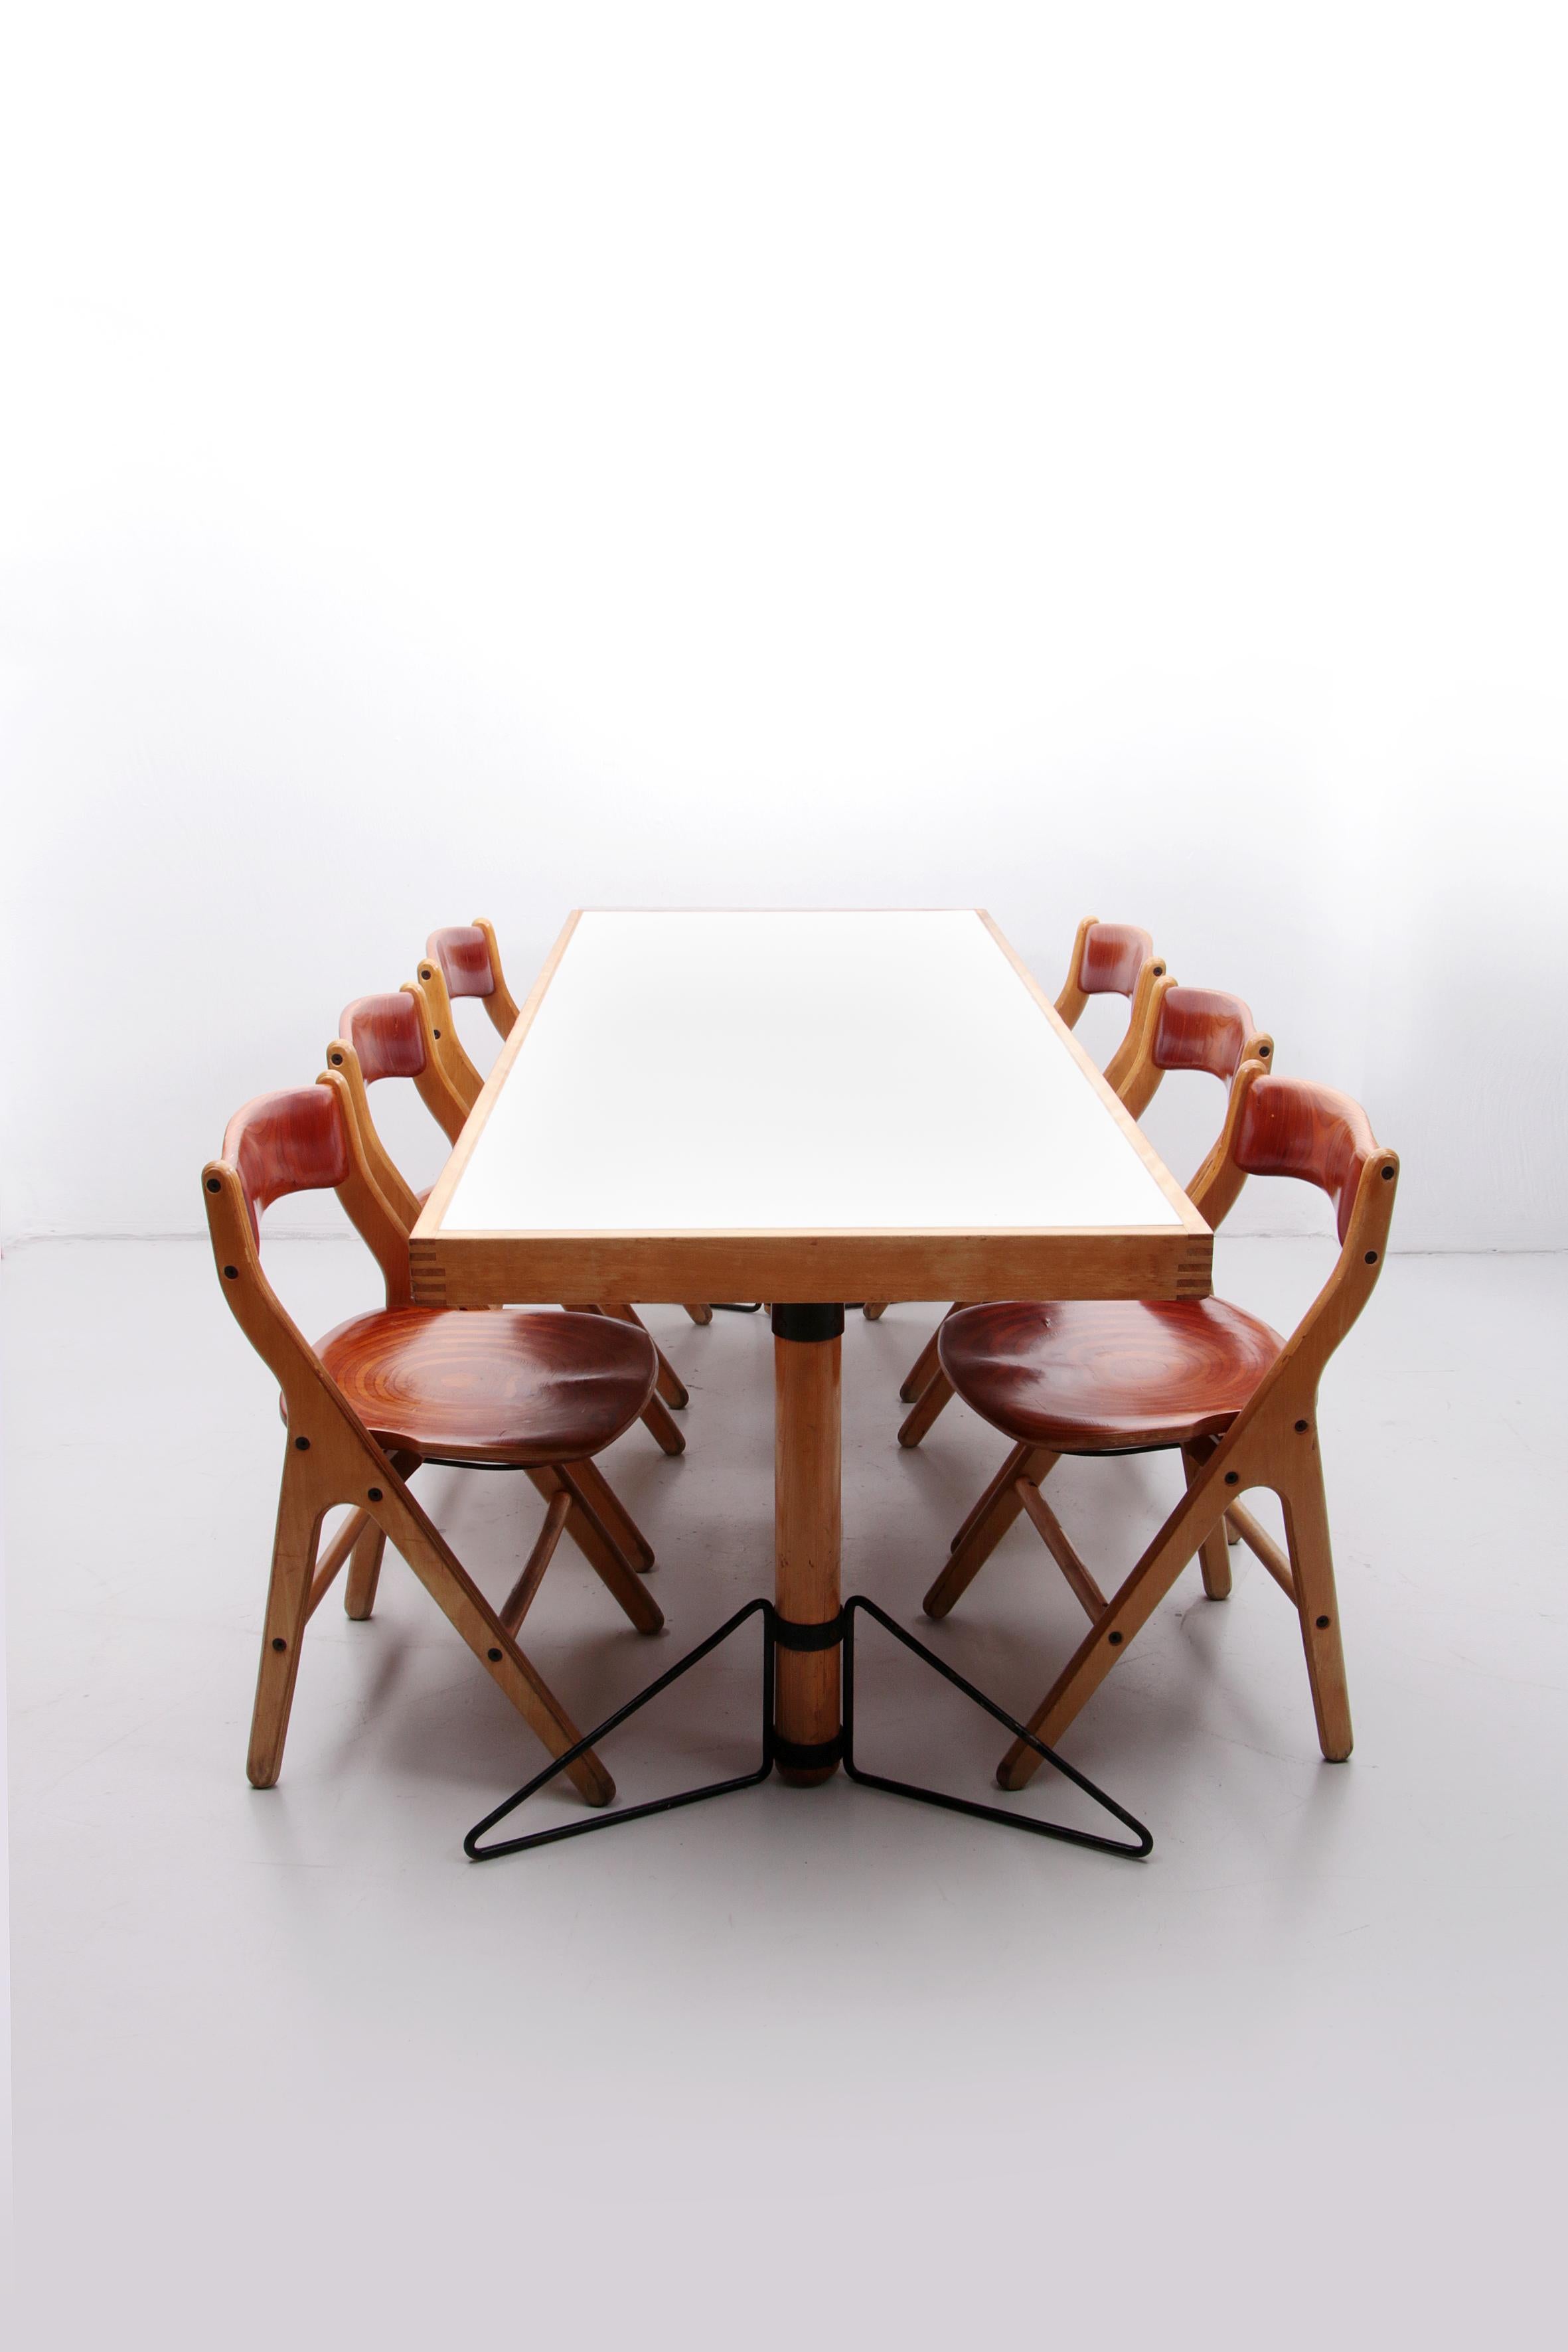 
Bel ensemble d'une table à manger avec 6 chaises, vous pouvez accrocher ces chaises à la table. Voir la photo. Il est très facile à nettoyer. Marc Held est un designer et a vécu à Montepelier.

Marc Held est architecte, photographe et designer. Il